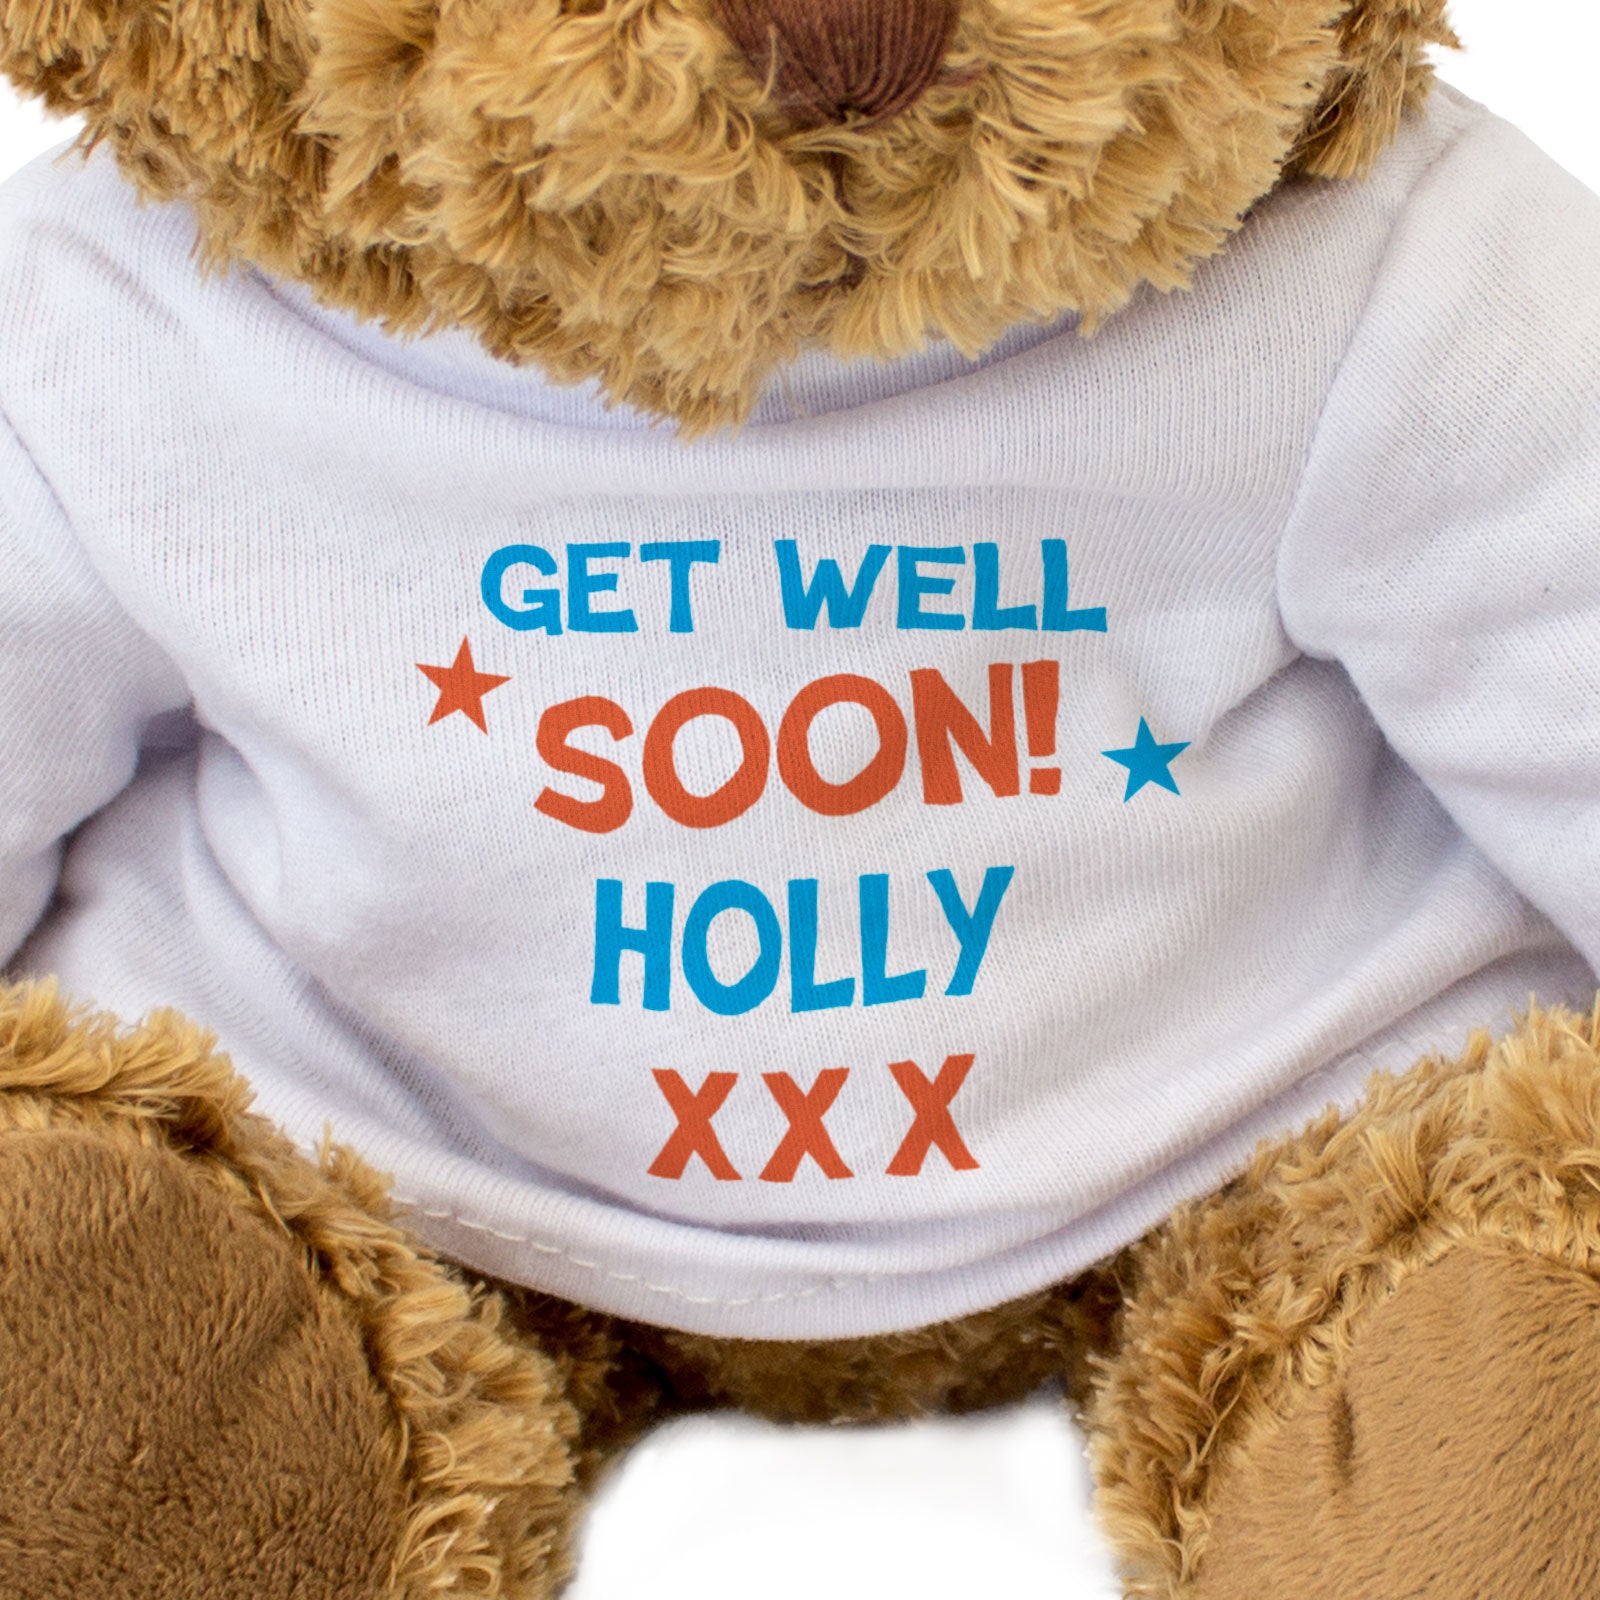 Get Well Soon Holly - Teddy Bear